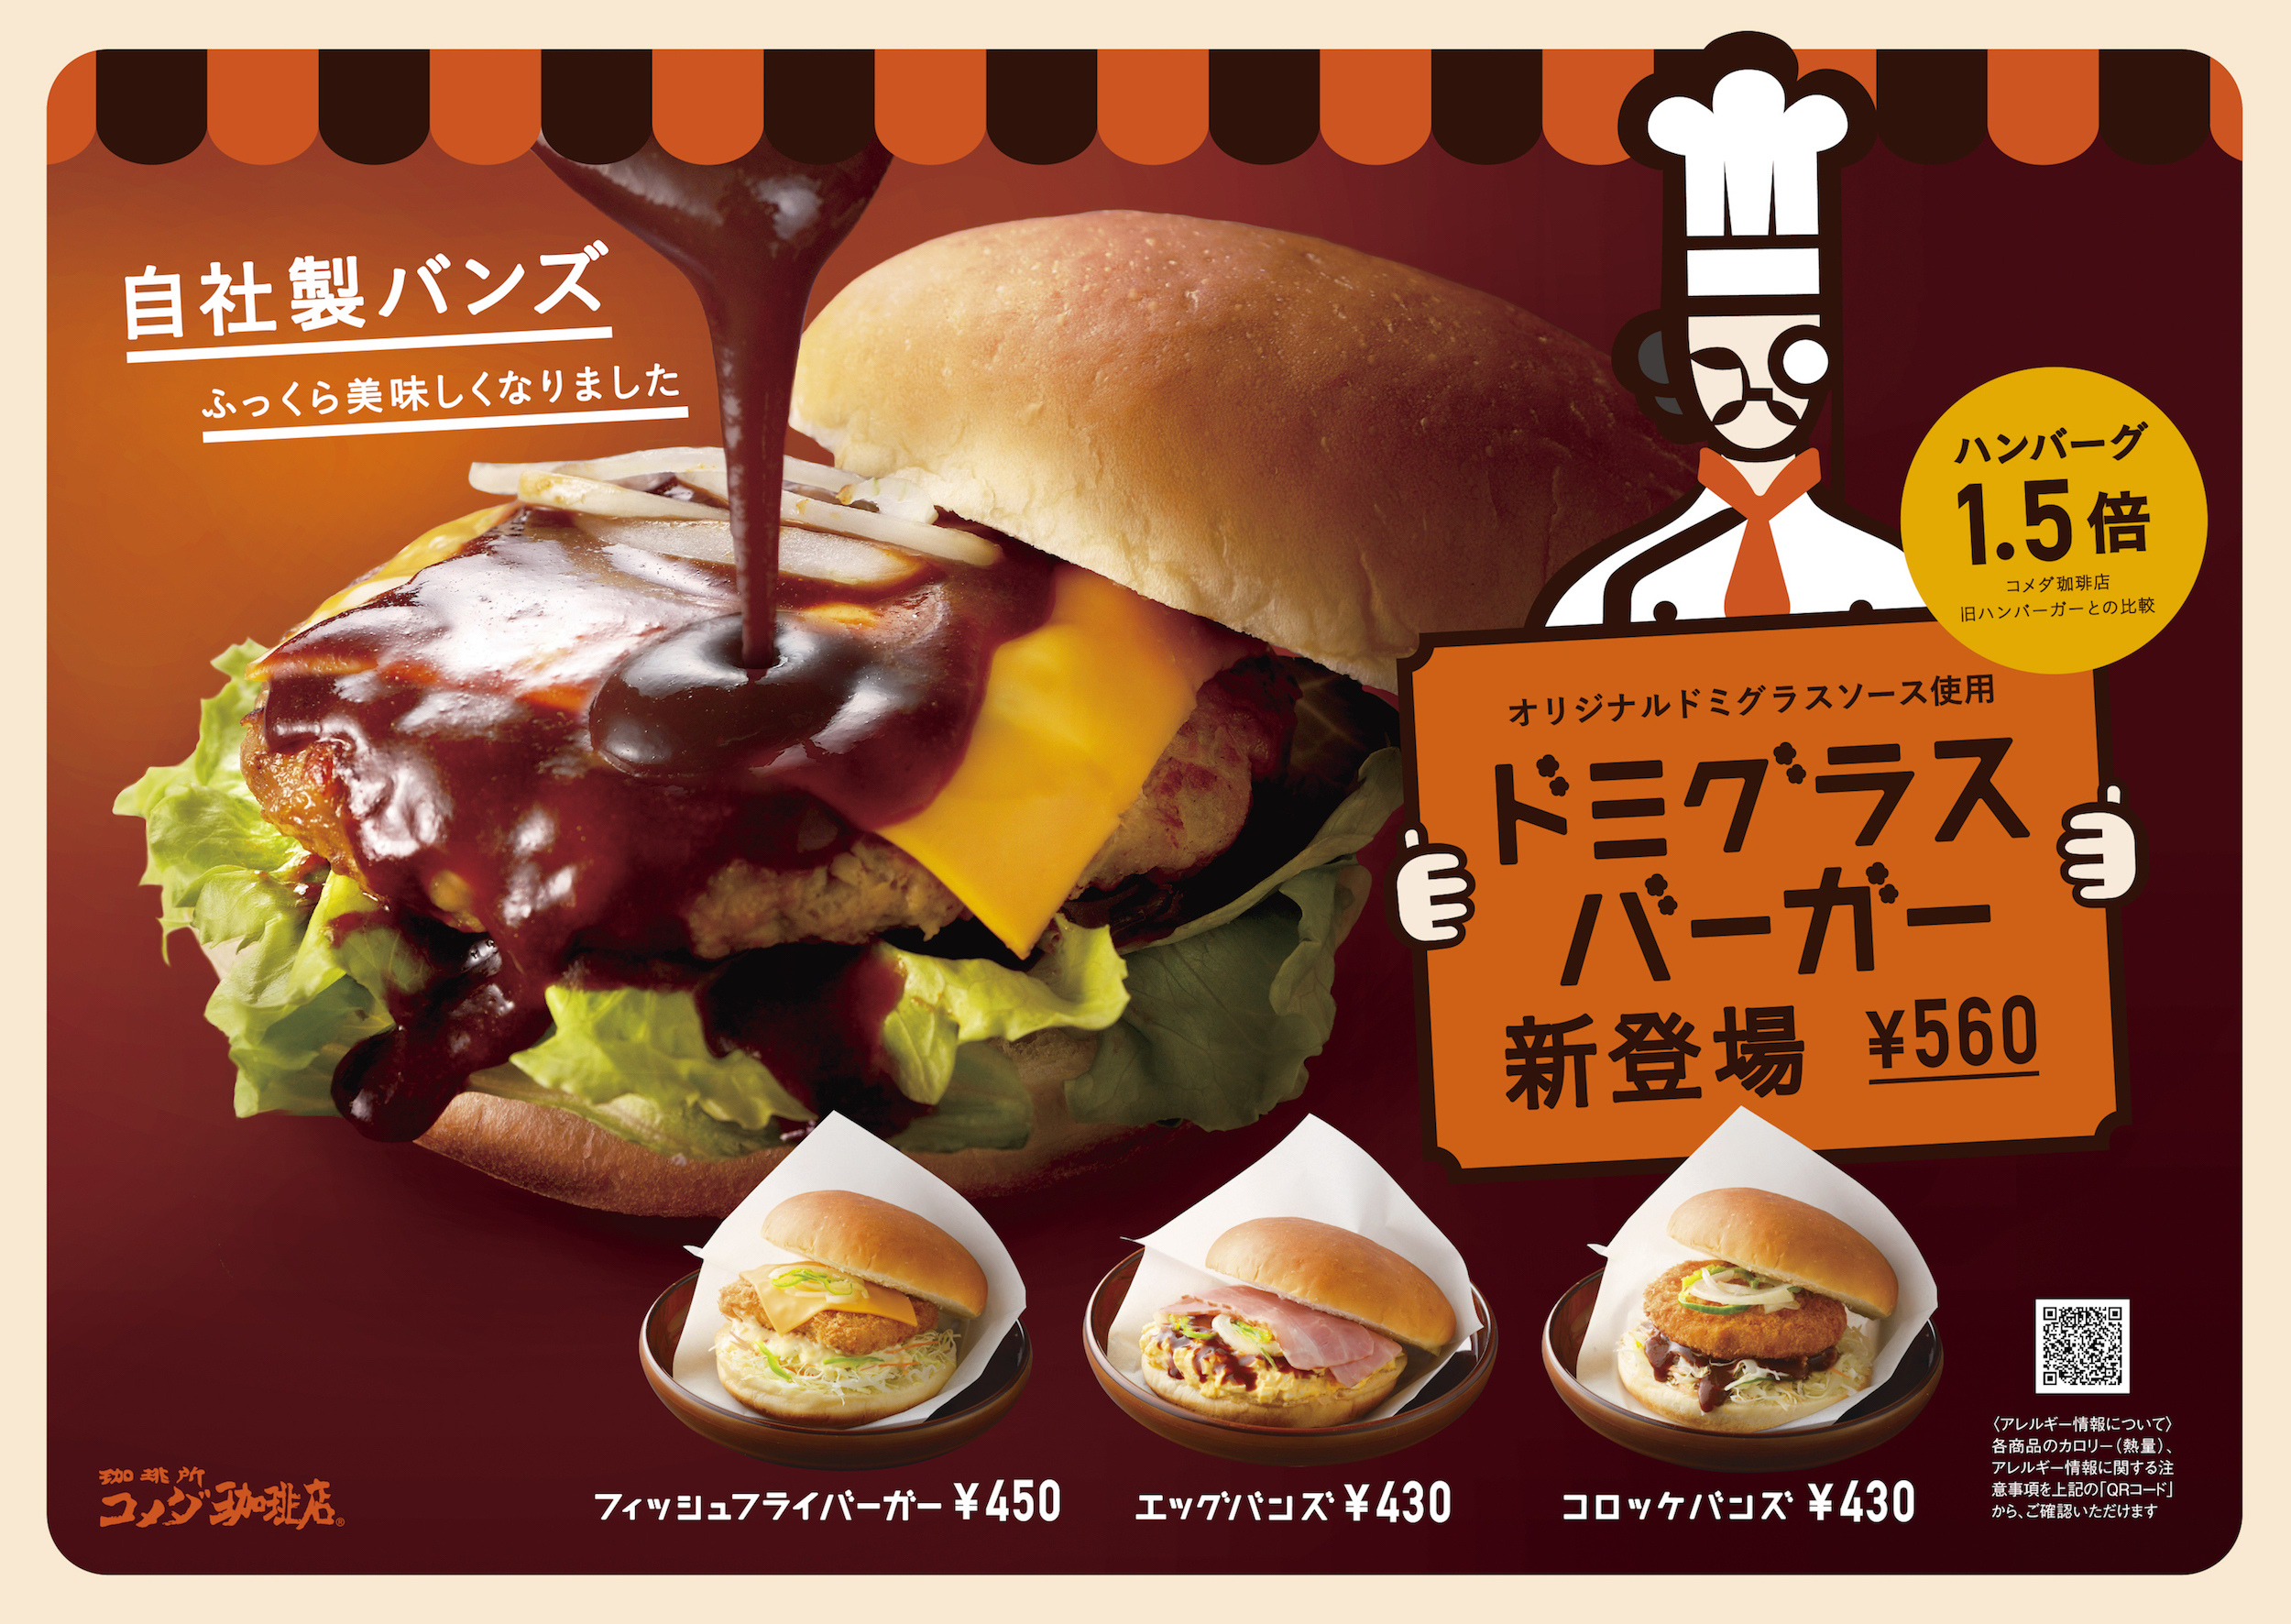 ハンバーグ1 5倍 コメダのハンバーガーがリニューアル ドミグラスバーガー 新登場 株式会社コメダのプレスリリース